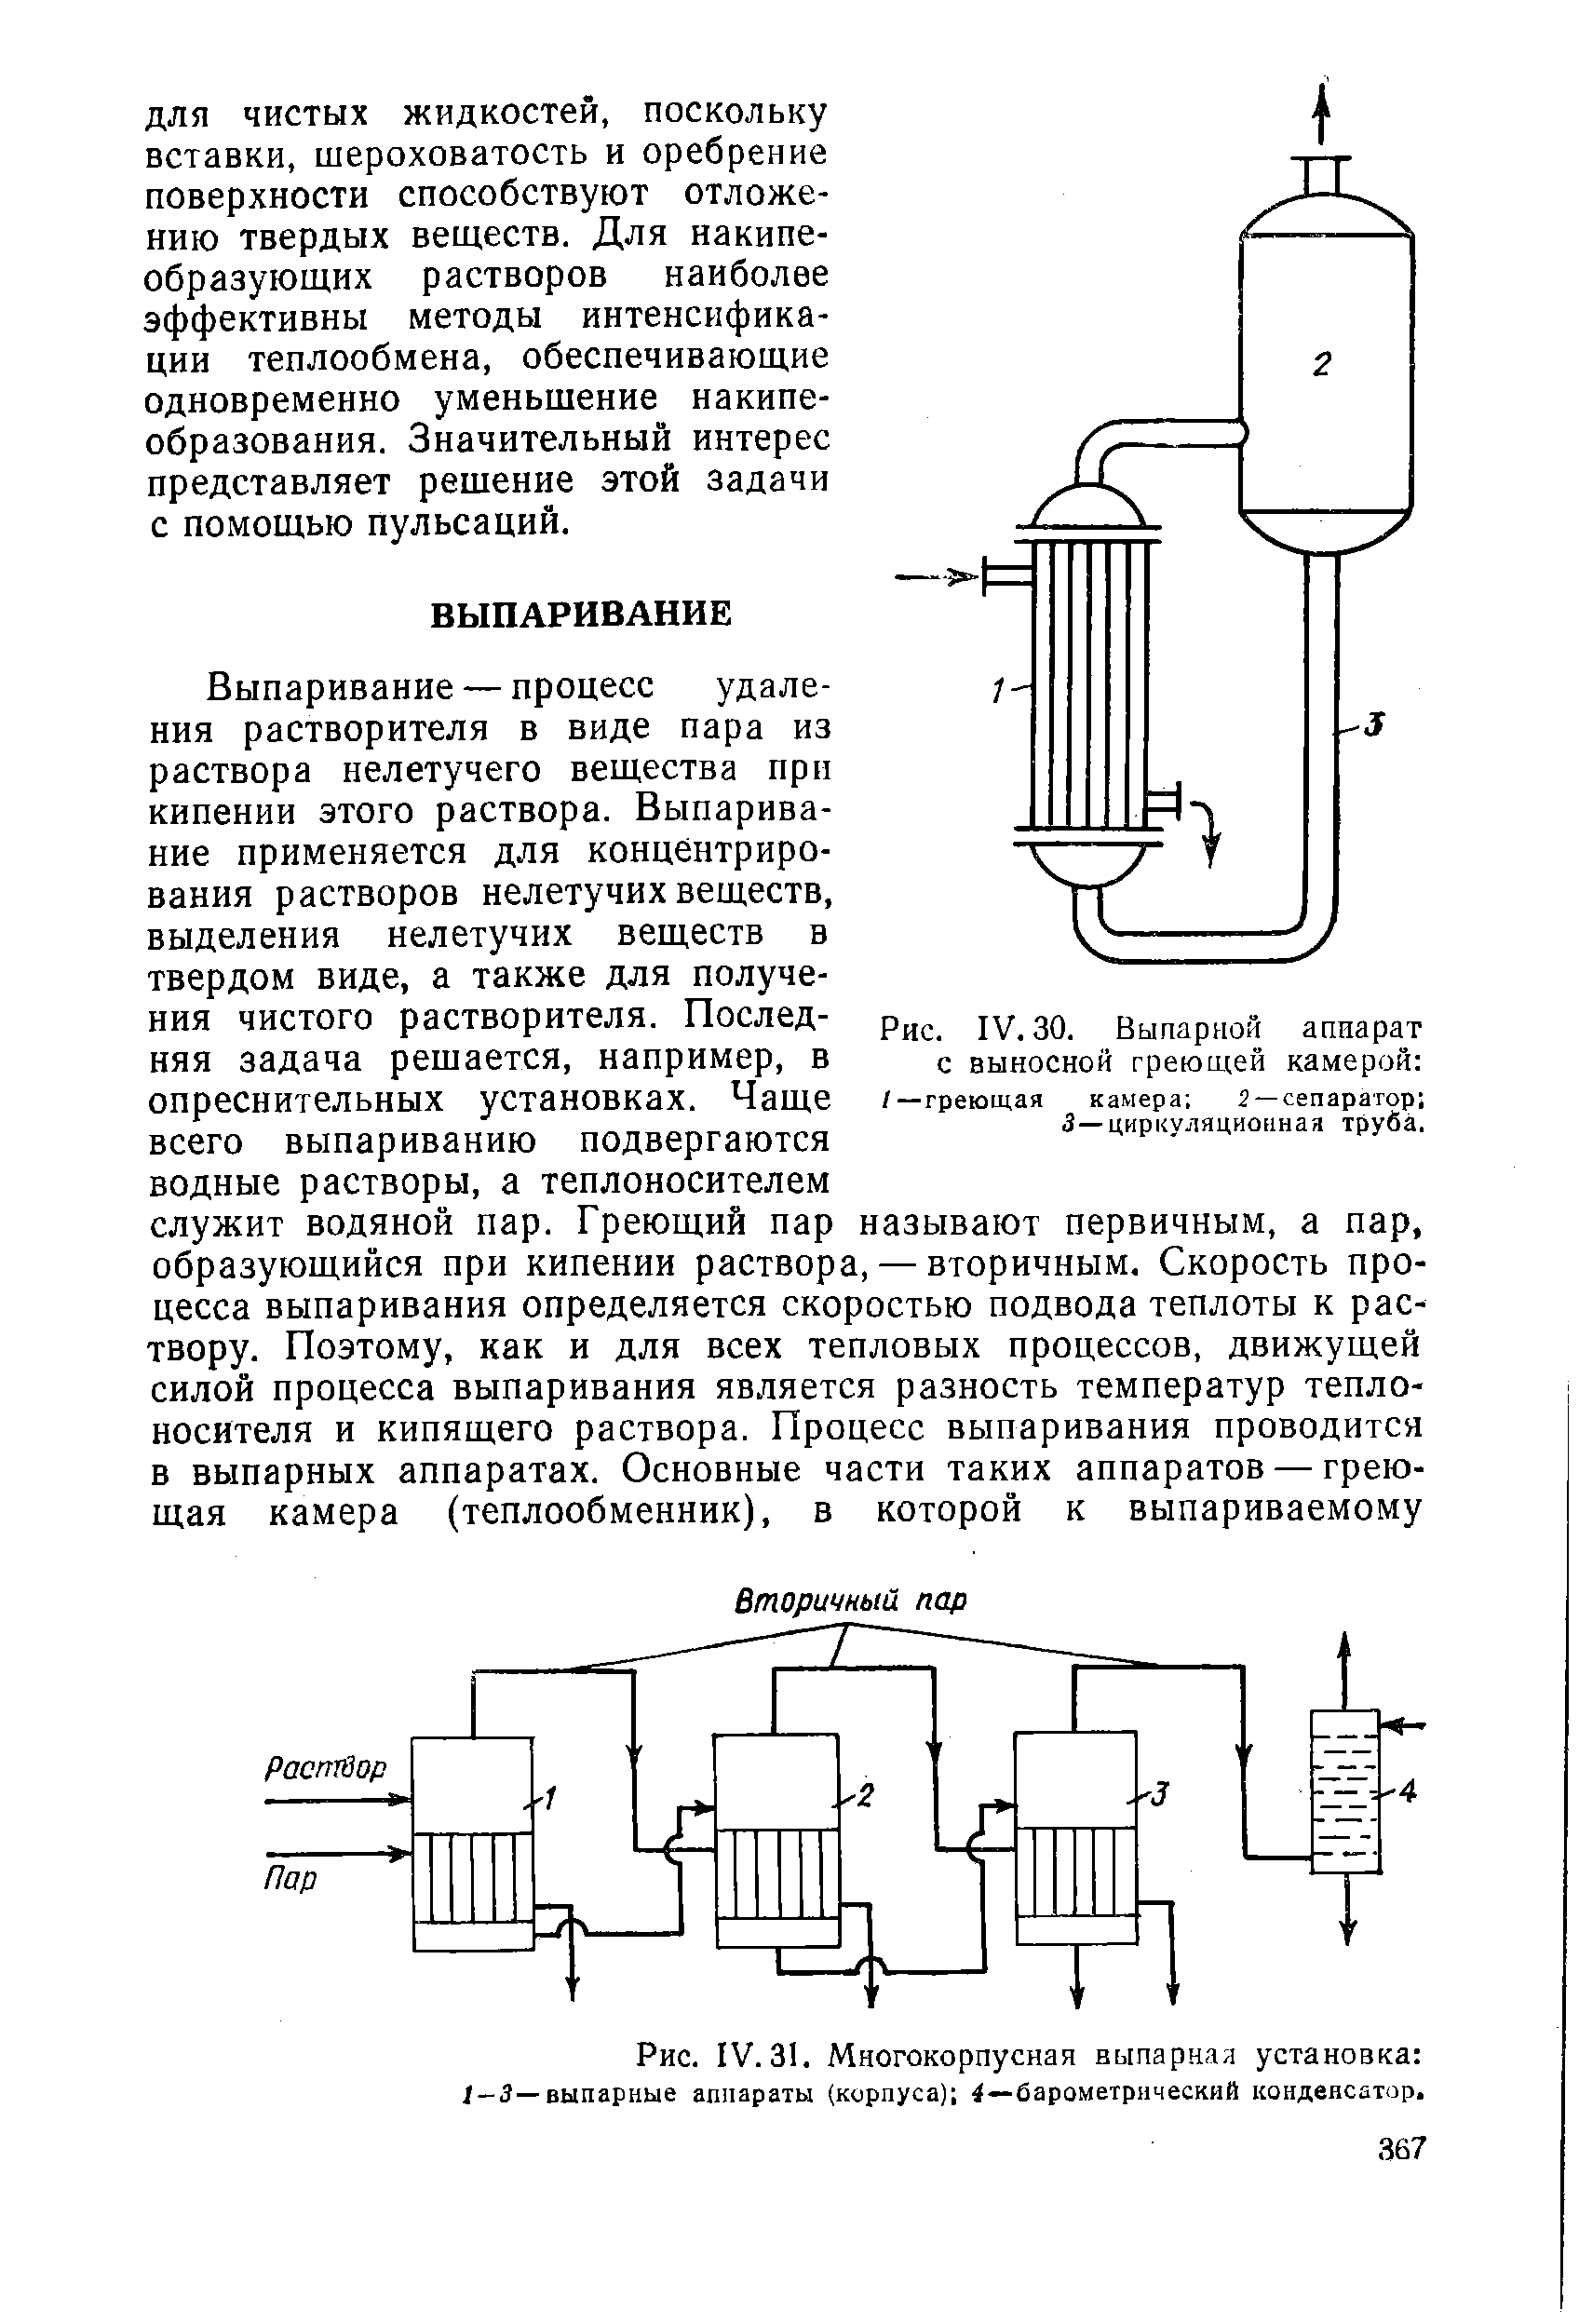 Многокорпусная выпарная установка /-3—выпарные аппараты (корпуса) 4—барометрический конденсатор.